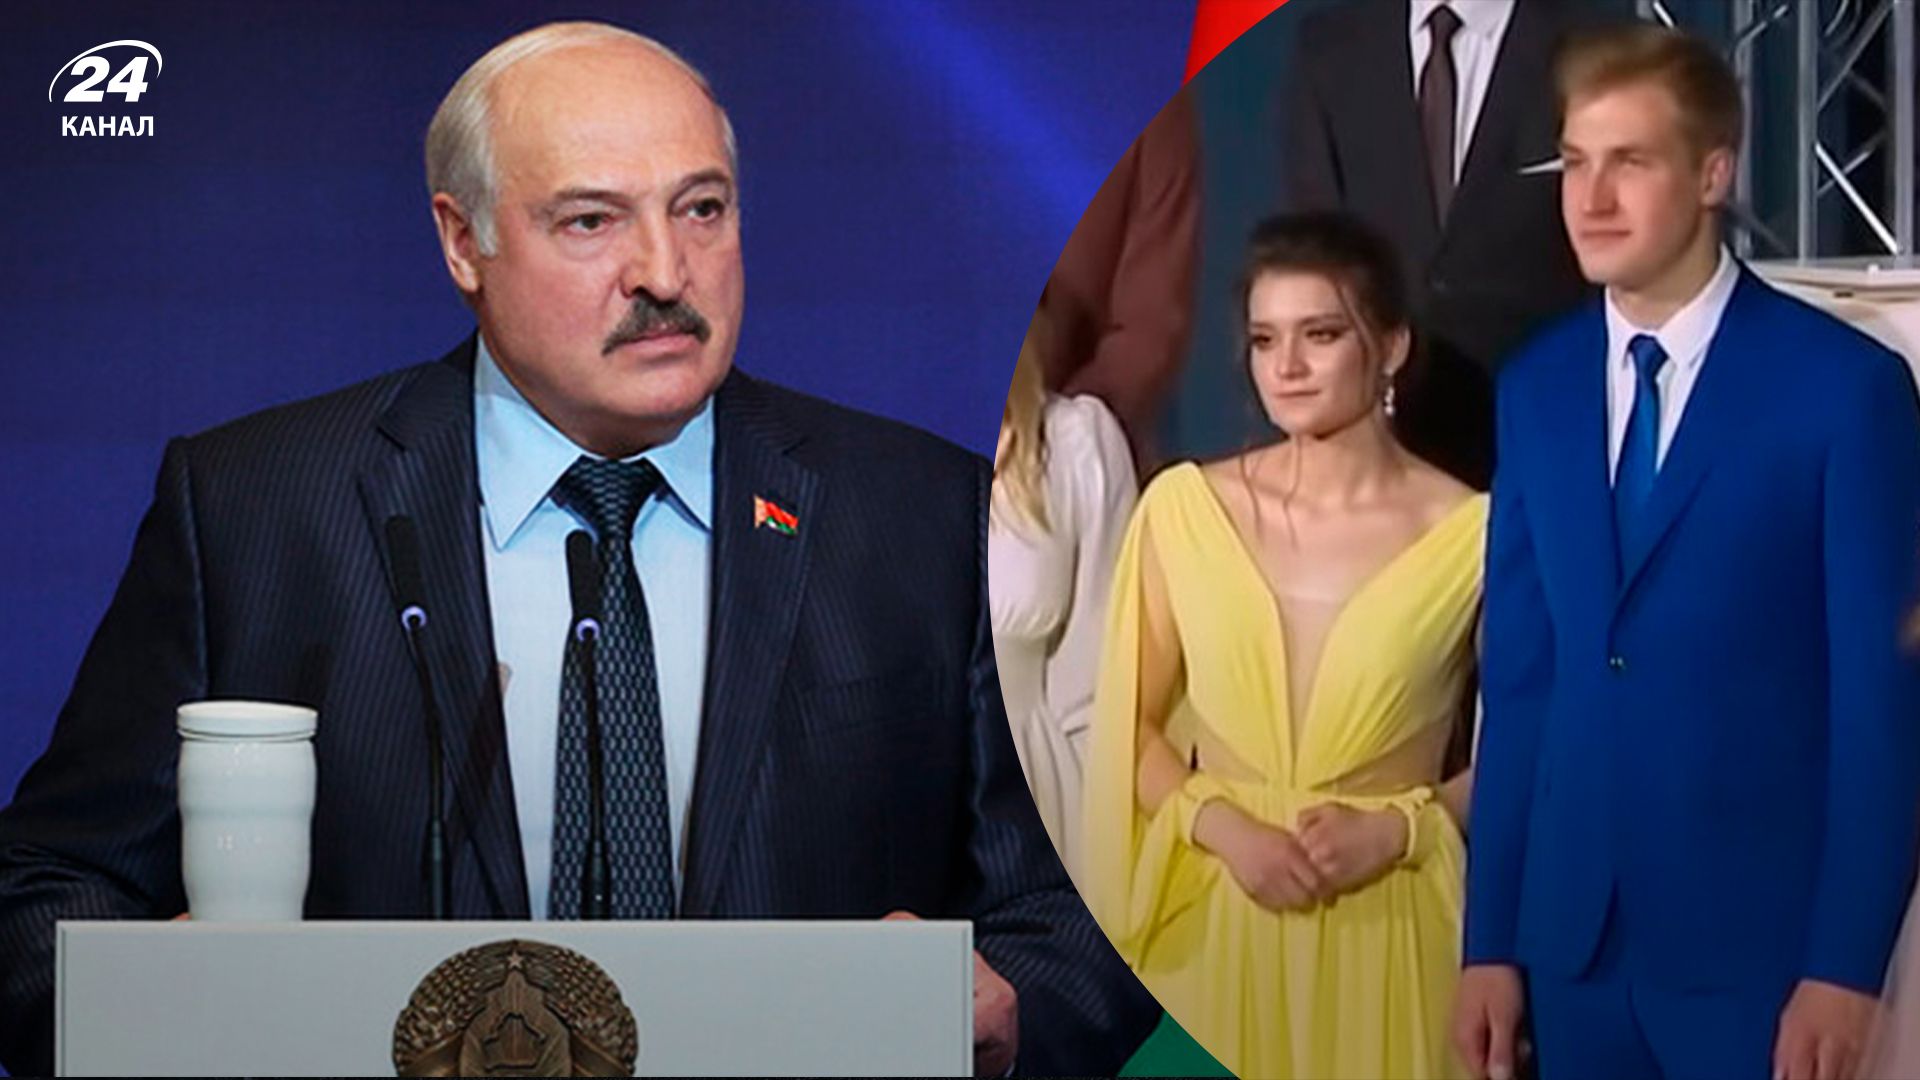 "Ошибка молодости" Коленьки: Давидюк рассказал, чем Путин шантажирует Лукашенко